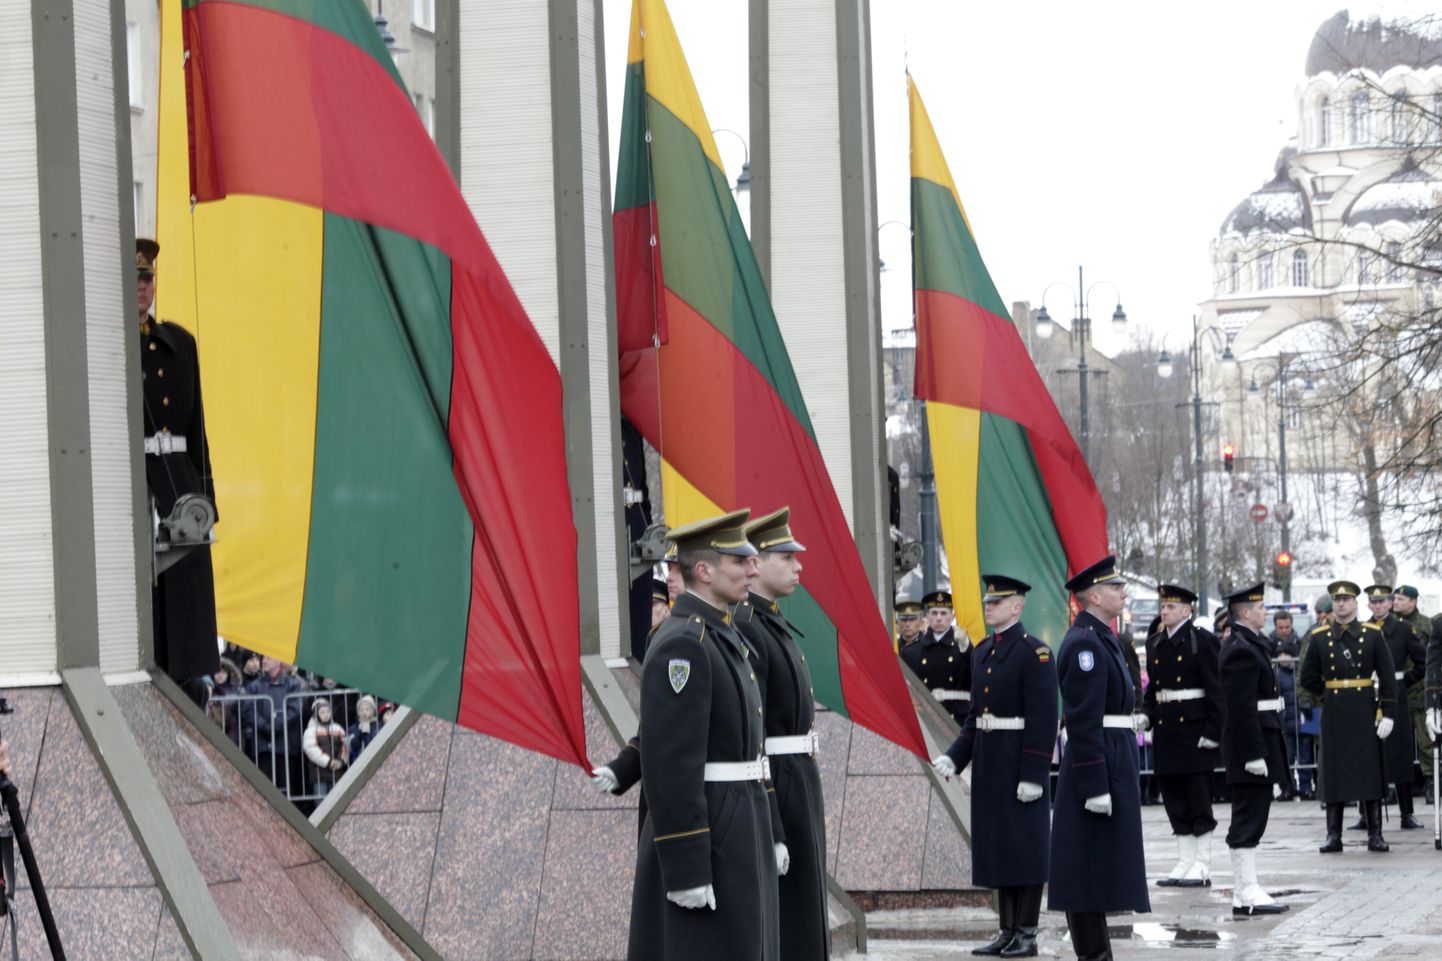 Leedu auvahtkond vabaduse kaitsjate päeva mälestustseremoonial. Nõukogude väed ründasid 13. jaanuaril 1991. aastal Vilniuse teletorni, rünnakus hukkus 14 Leedu tsiviilisikut.